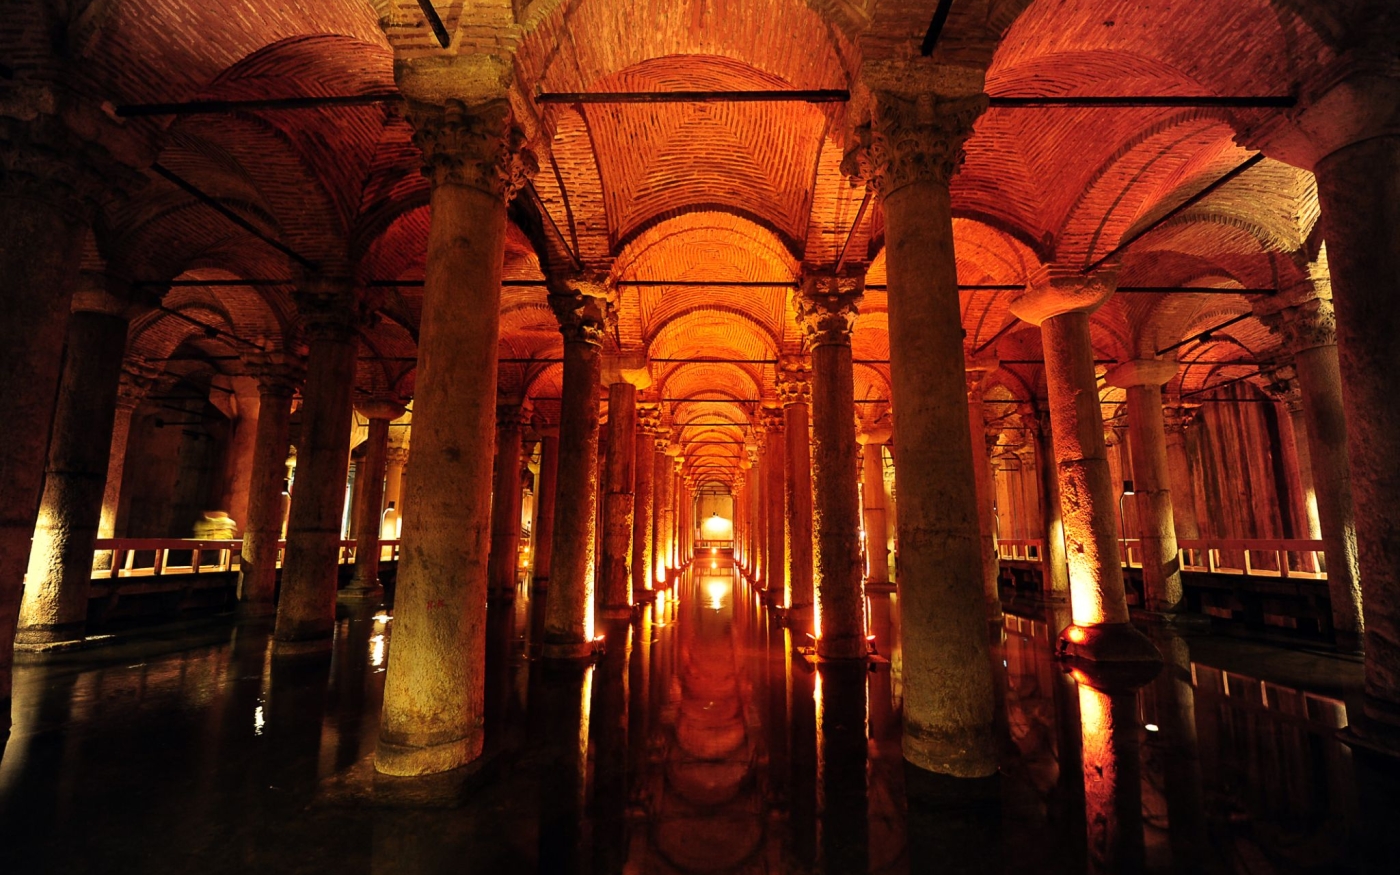 La citerne Basilique fut construite au VIe siècle par l’empereur Justinien Ier (AFP/Mustafa Ozer)